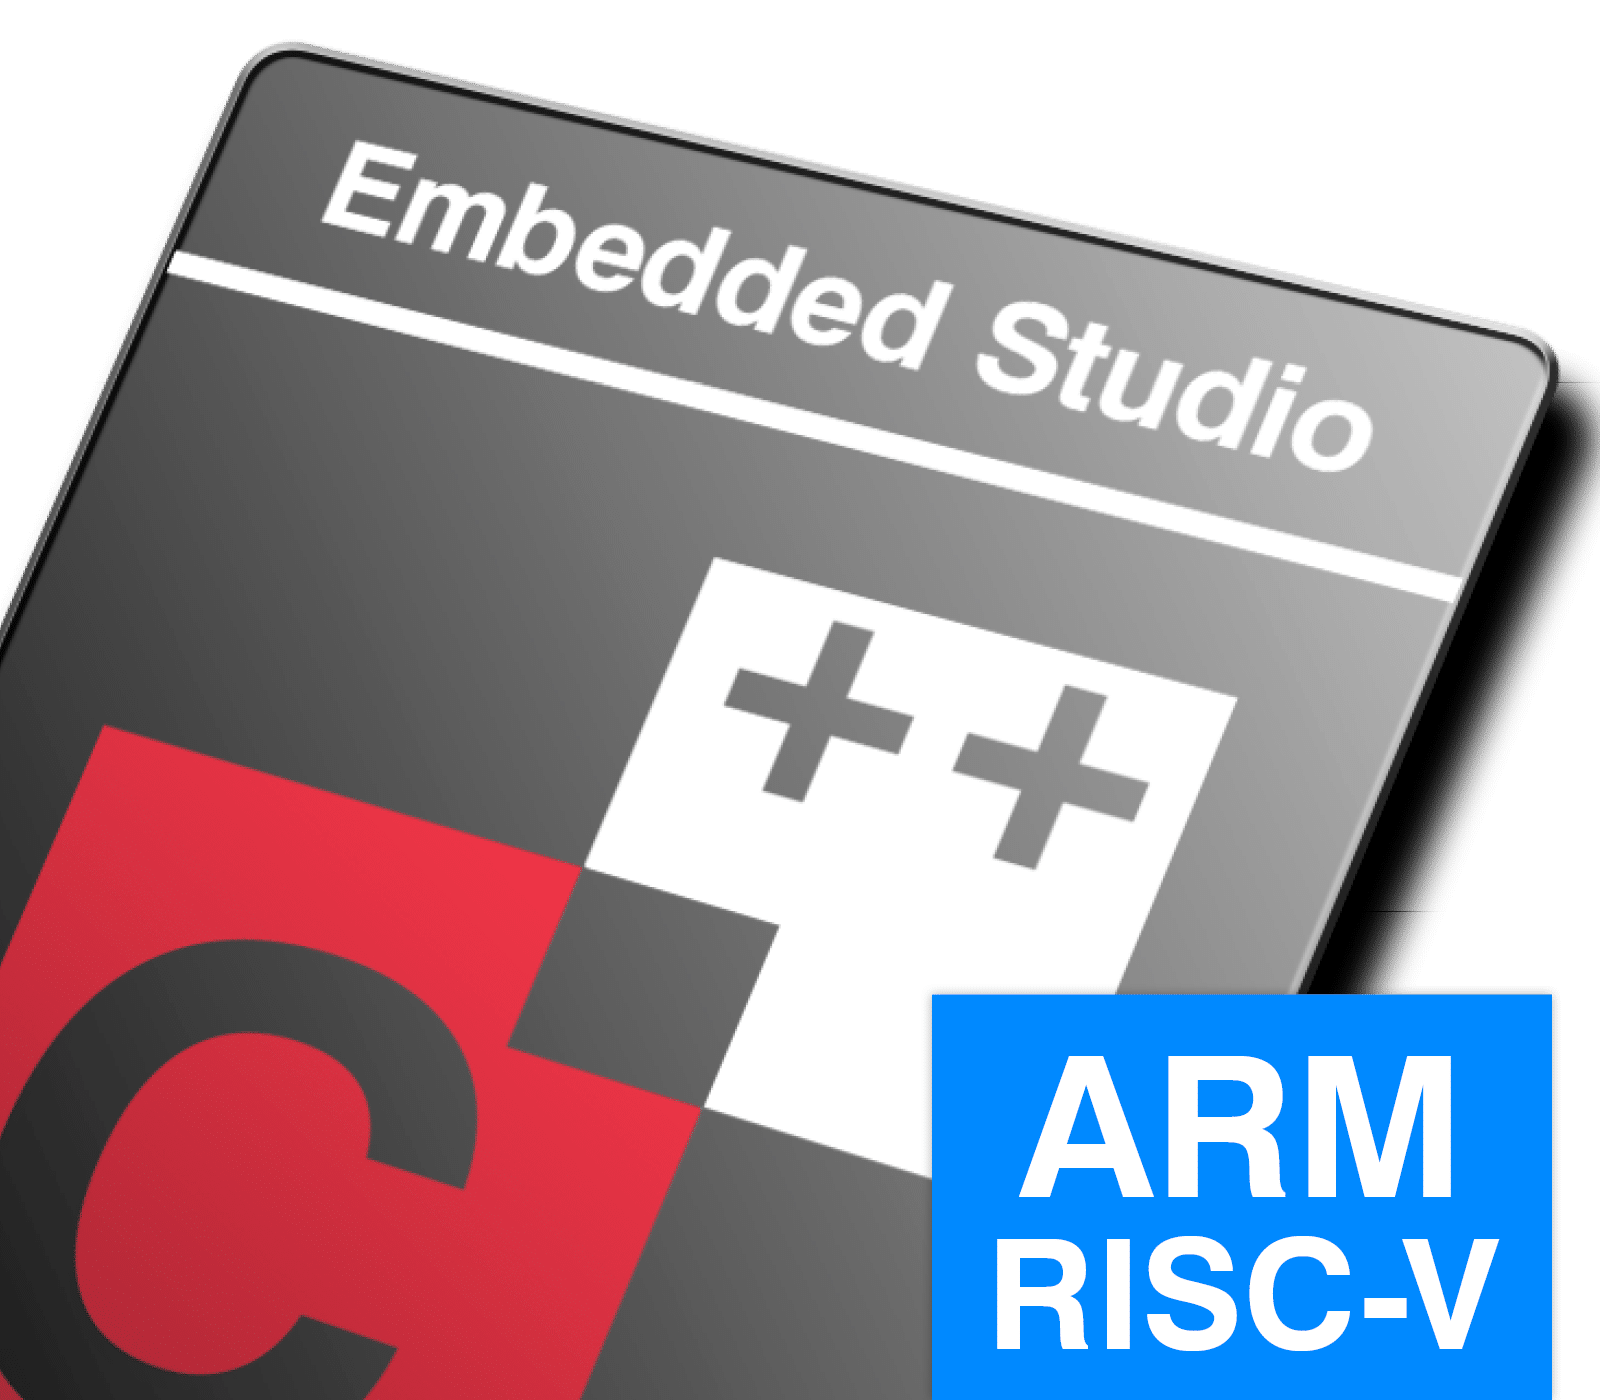 SEGGER Embedded Studio ARM RISC-V Bundle